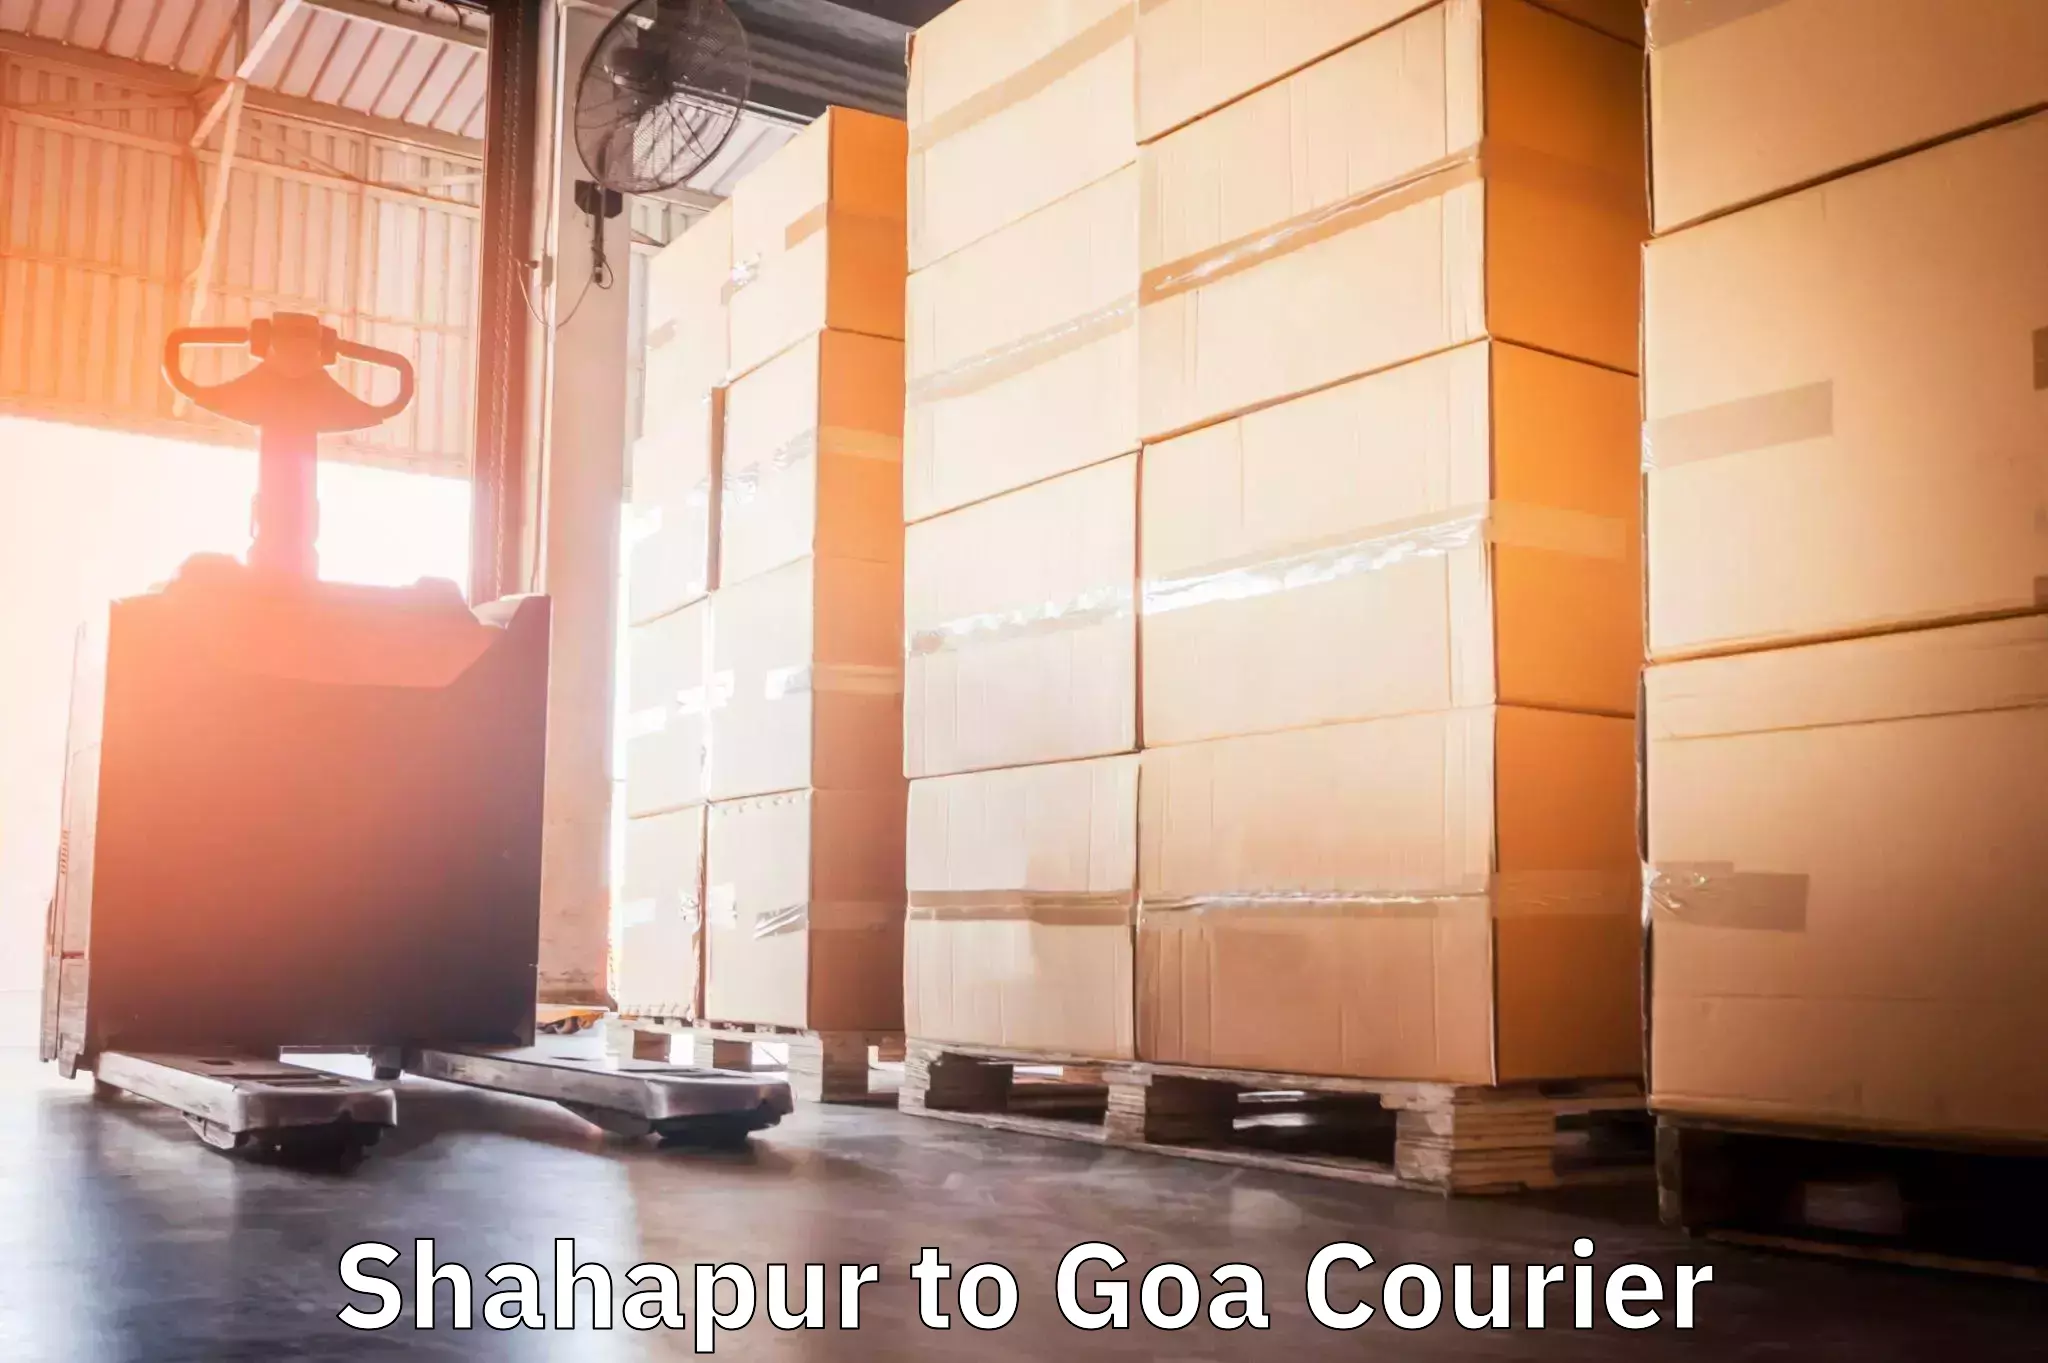 Courier service comparison Shahapur to Mormugao Port